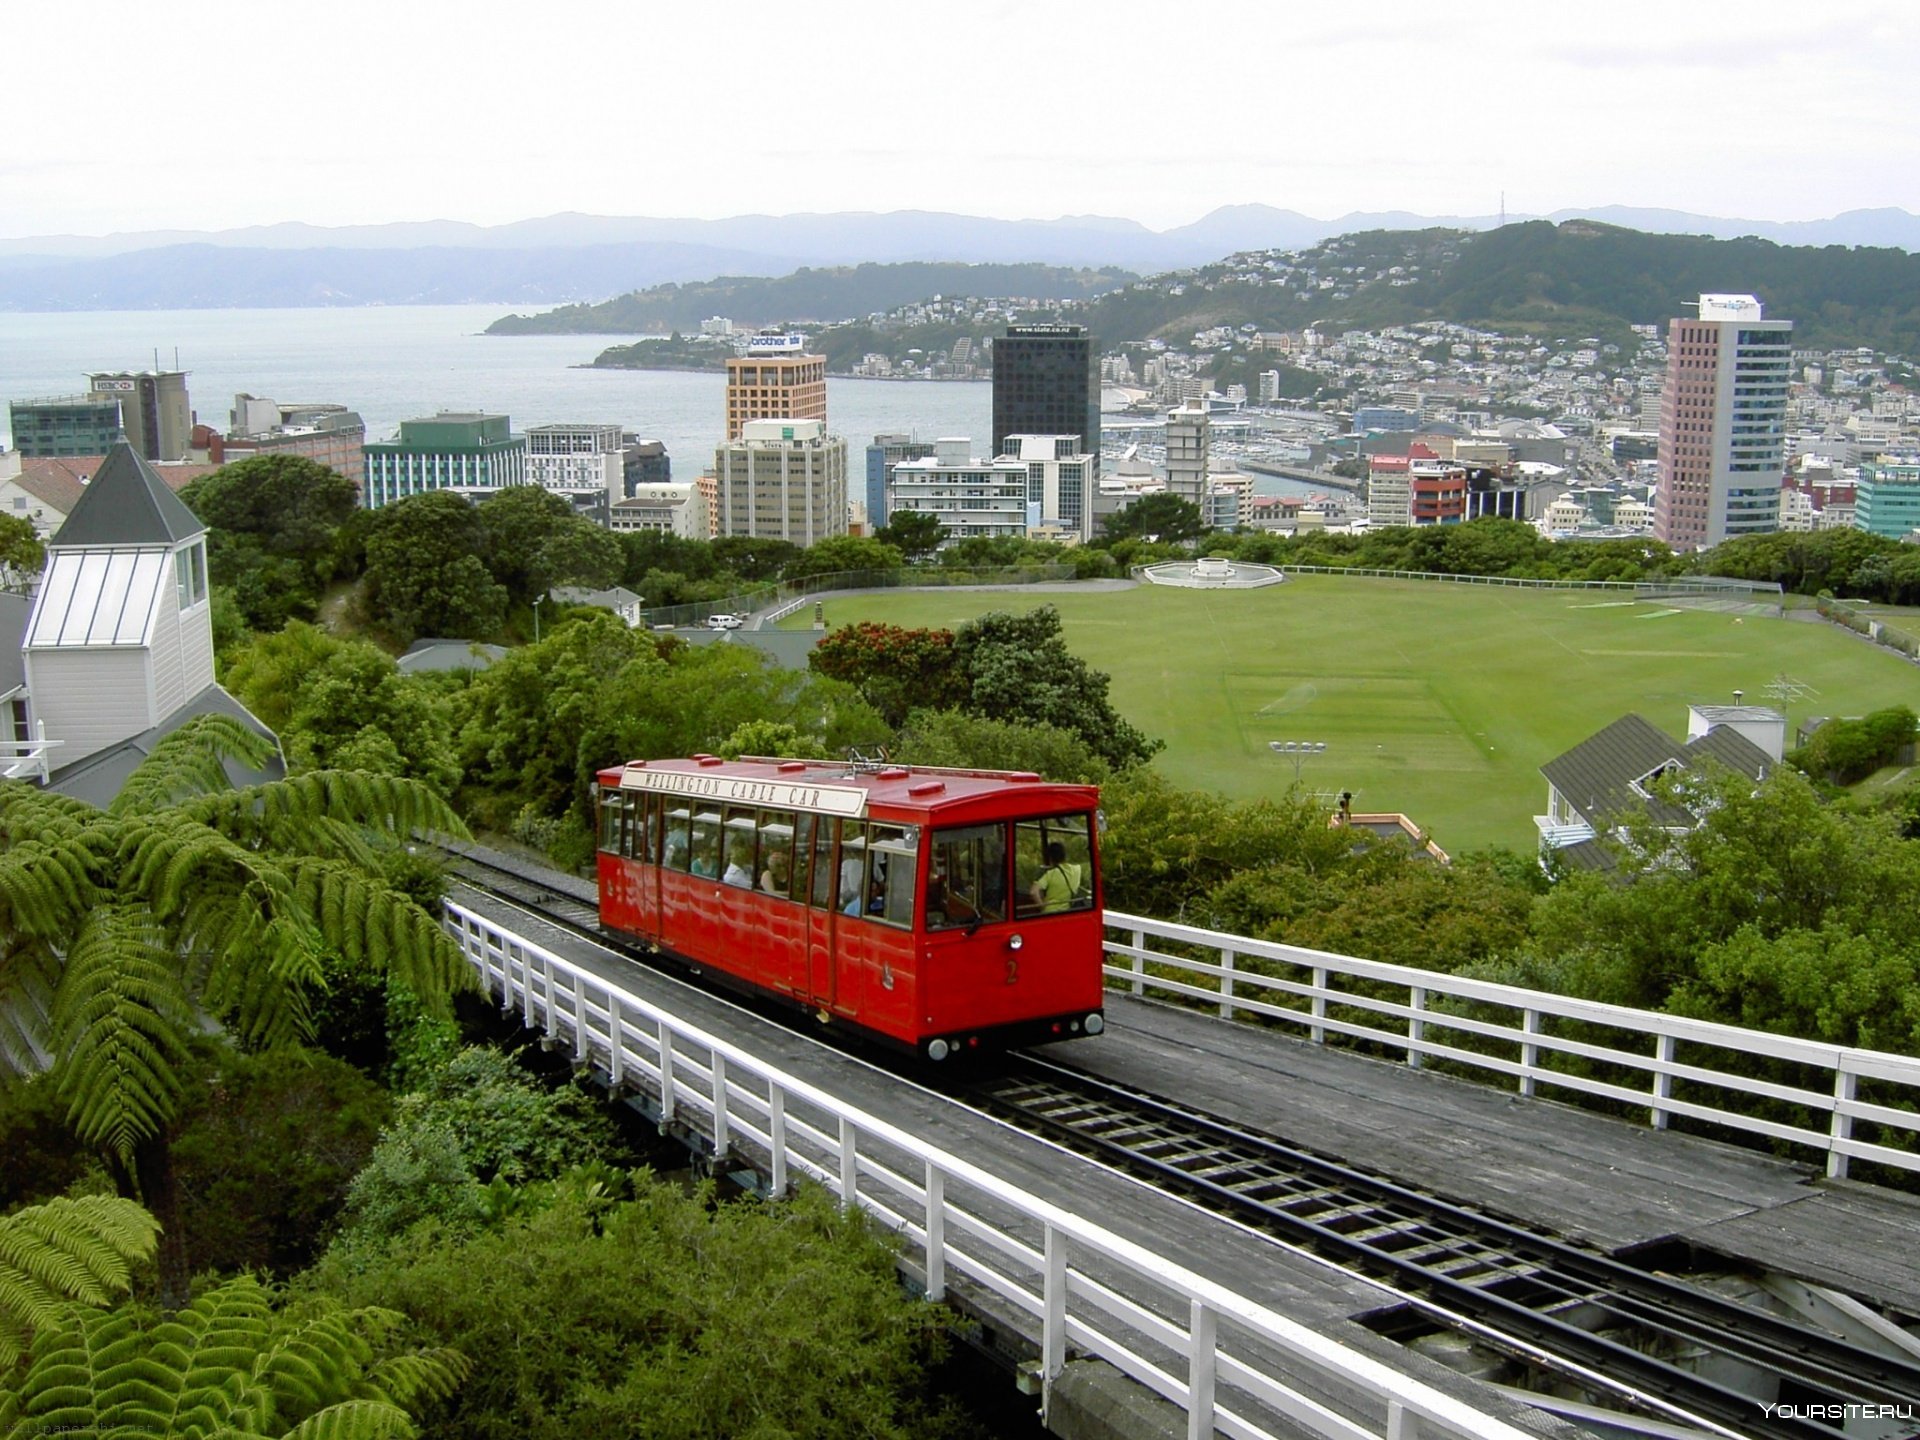 Wellington new zealand. Город Веллингтон новая Зеландия. Столица новой Зеландии (Wellington). Веллингтон Новозеландии. Веллингтон новая Зеландия трамвай.